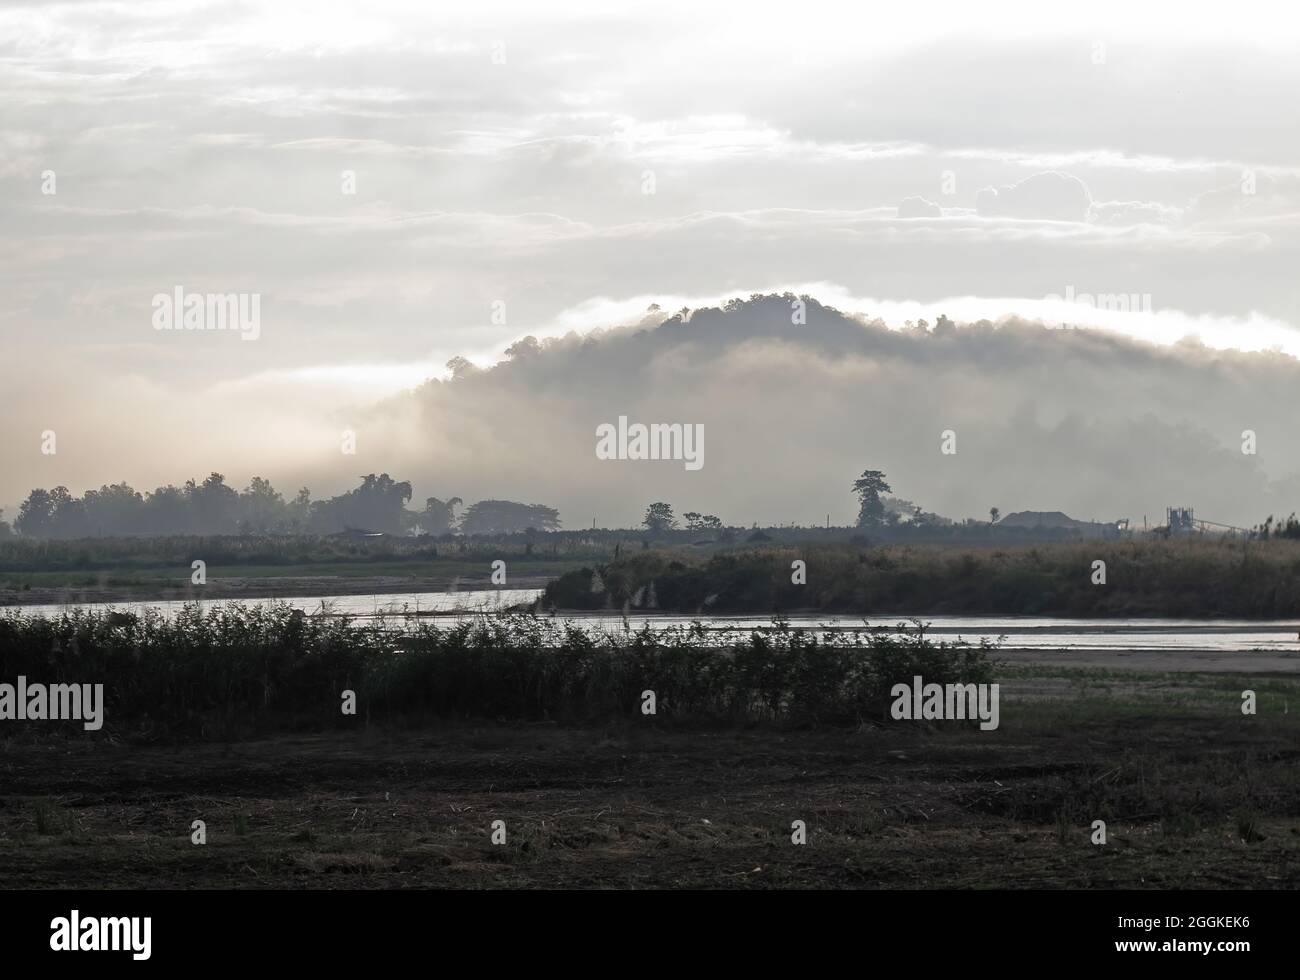 Hügel, der aus dem Nebel über dem Flusstal von Thaton, Thailand, auftaucht November Stockfoto